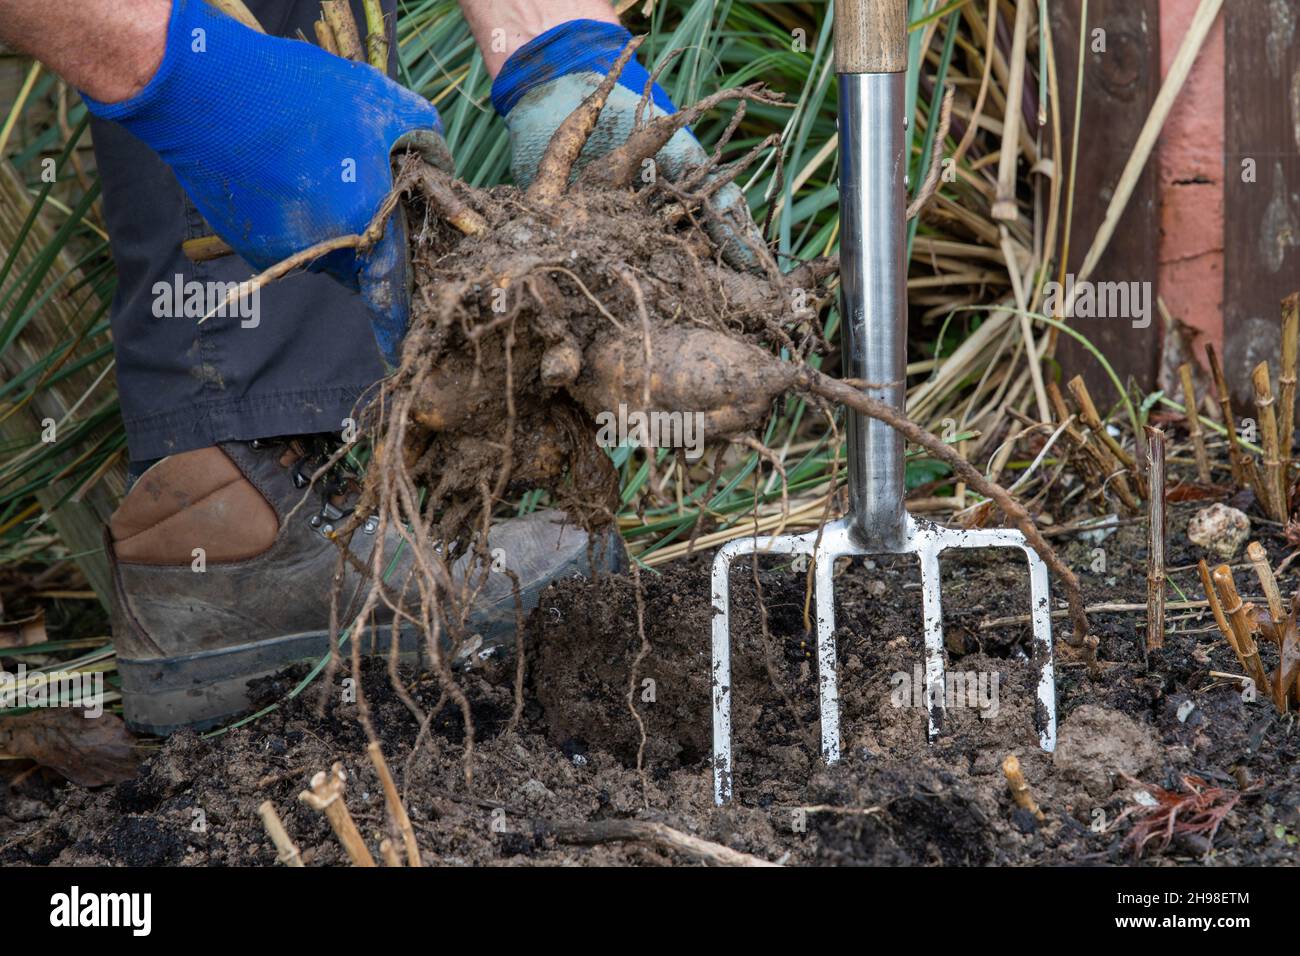 Jardinero sacudiendo el suelo suelto de los tubérculos de dahlia antes del almacenamiento del invierno Foto de stock